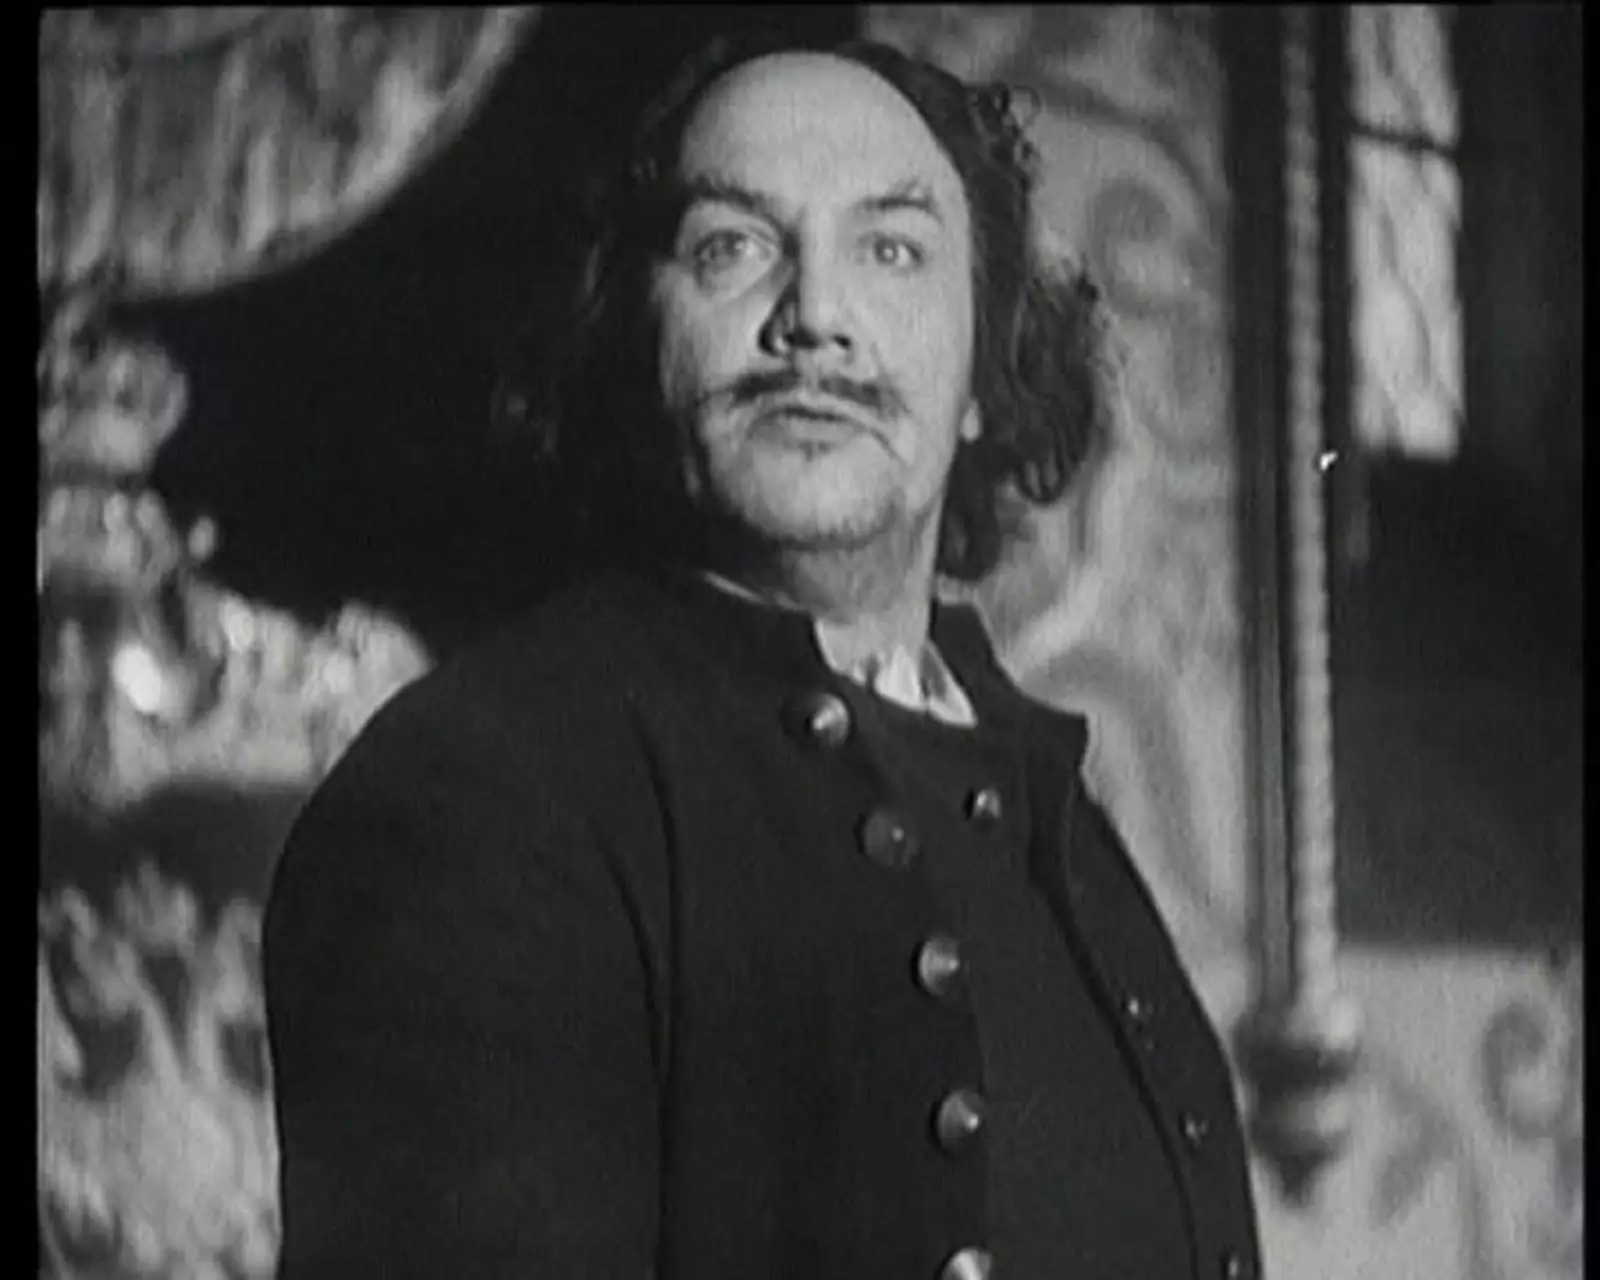  Кадр из фильма «Пётр Первый» 1937 года.